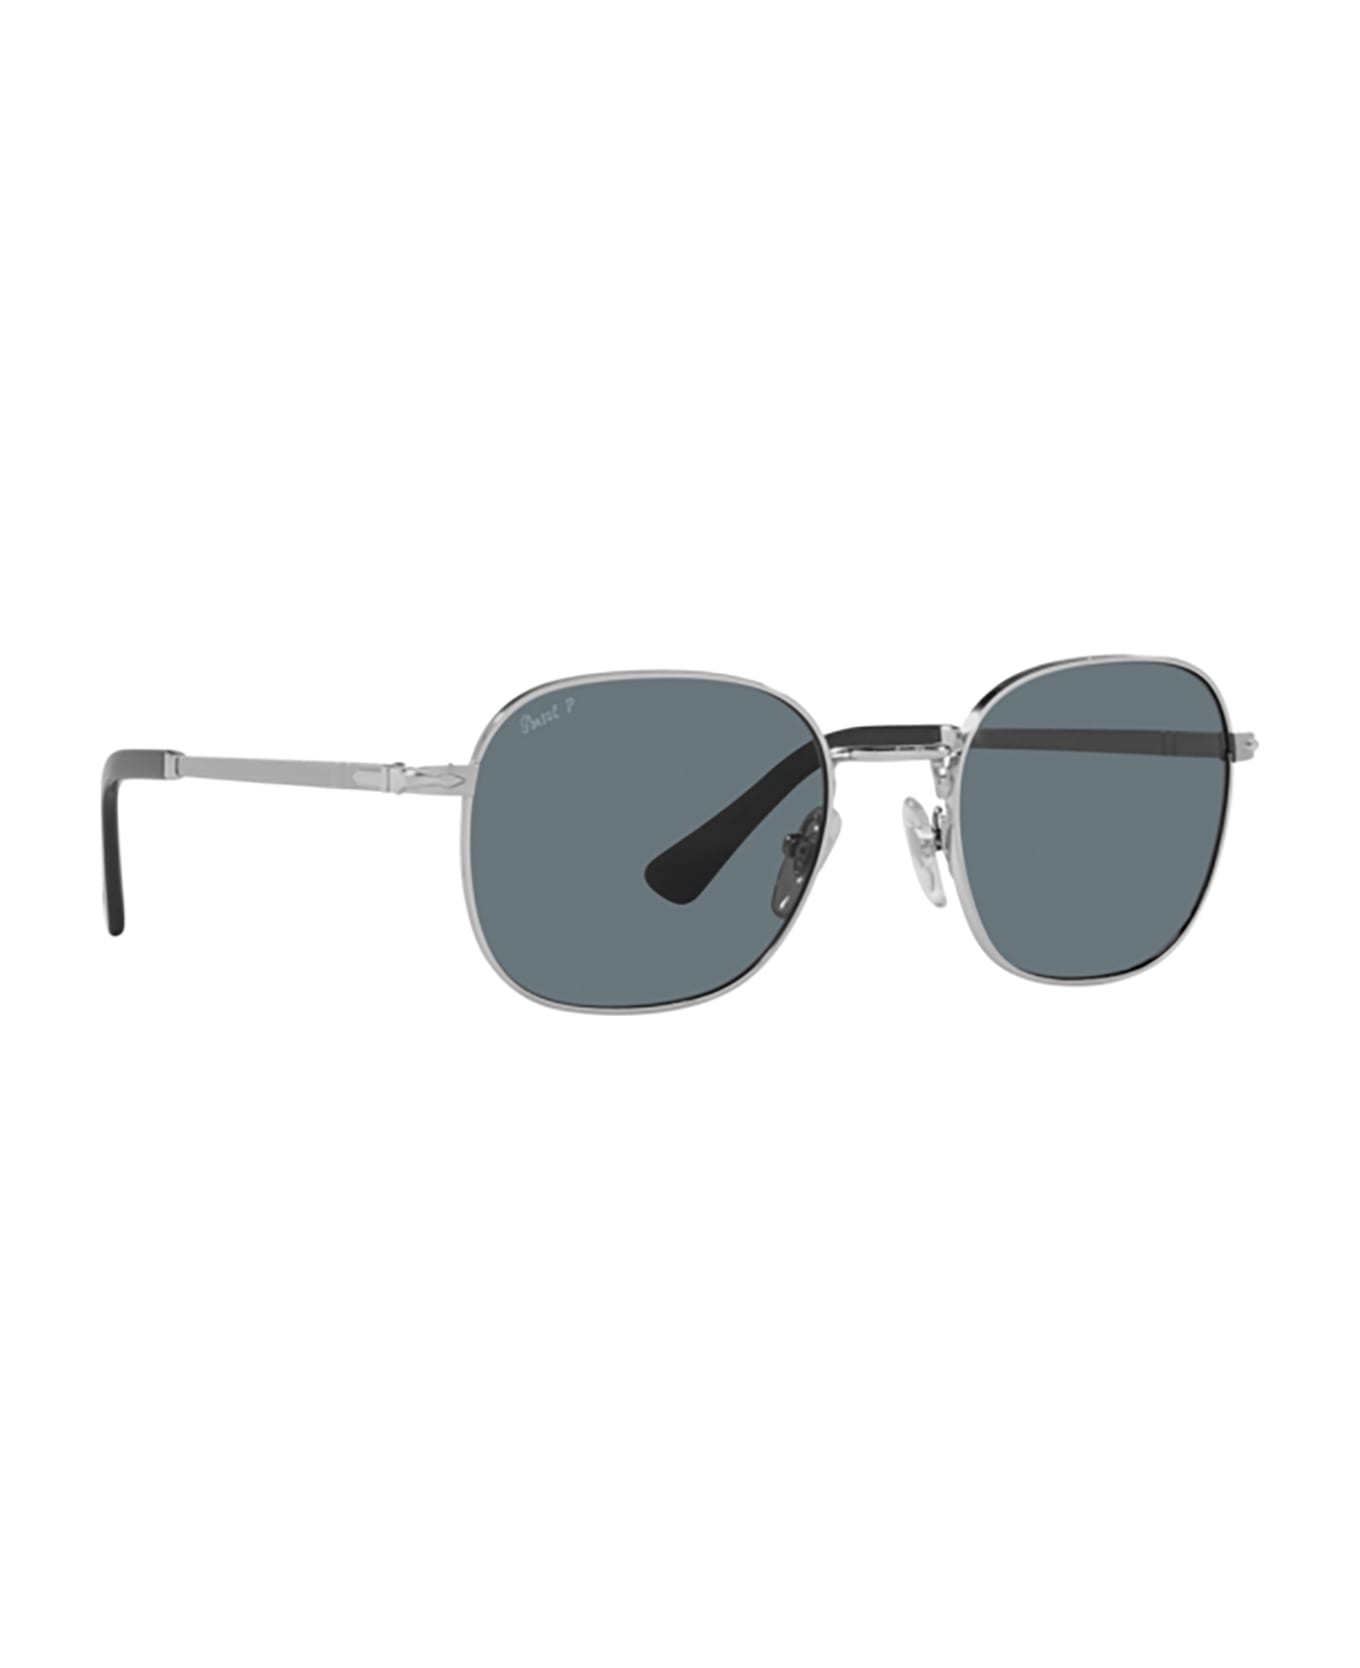 Persol Po1009s Silver Sunglasses - Silver